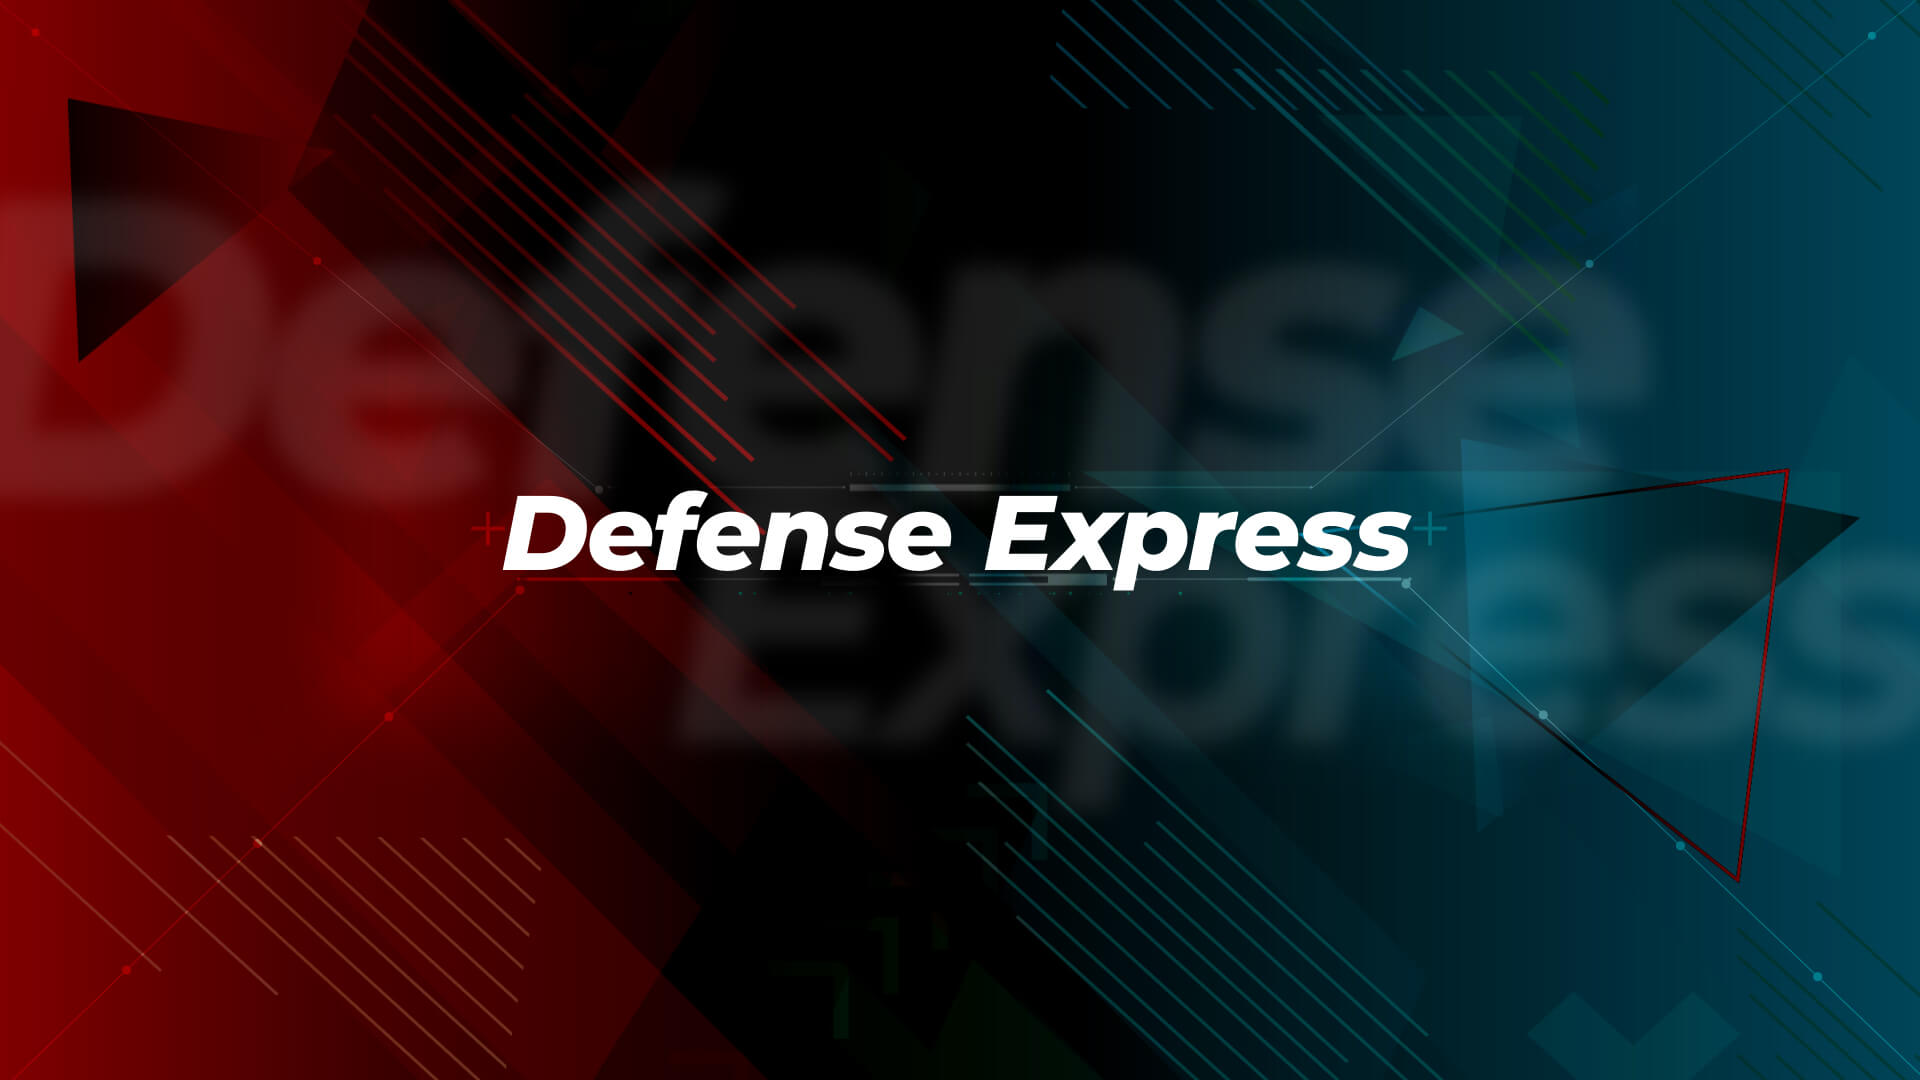 Військовий портал Defense Express - все про військову справу